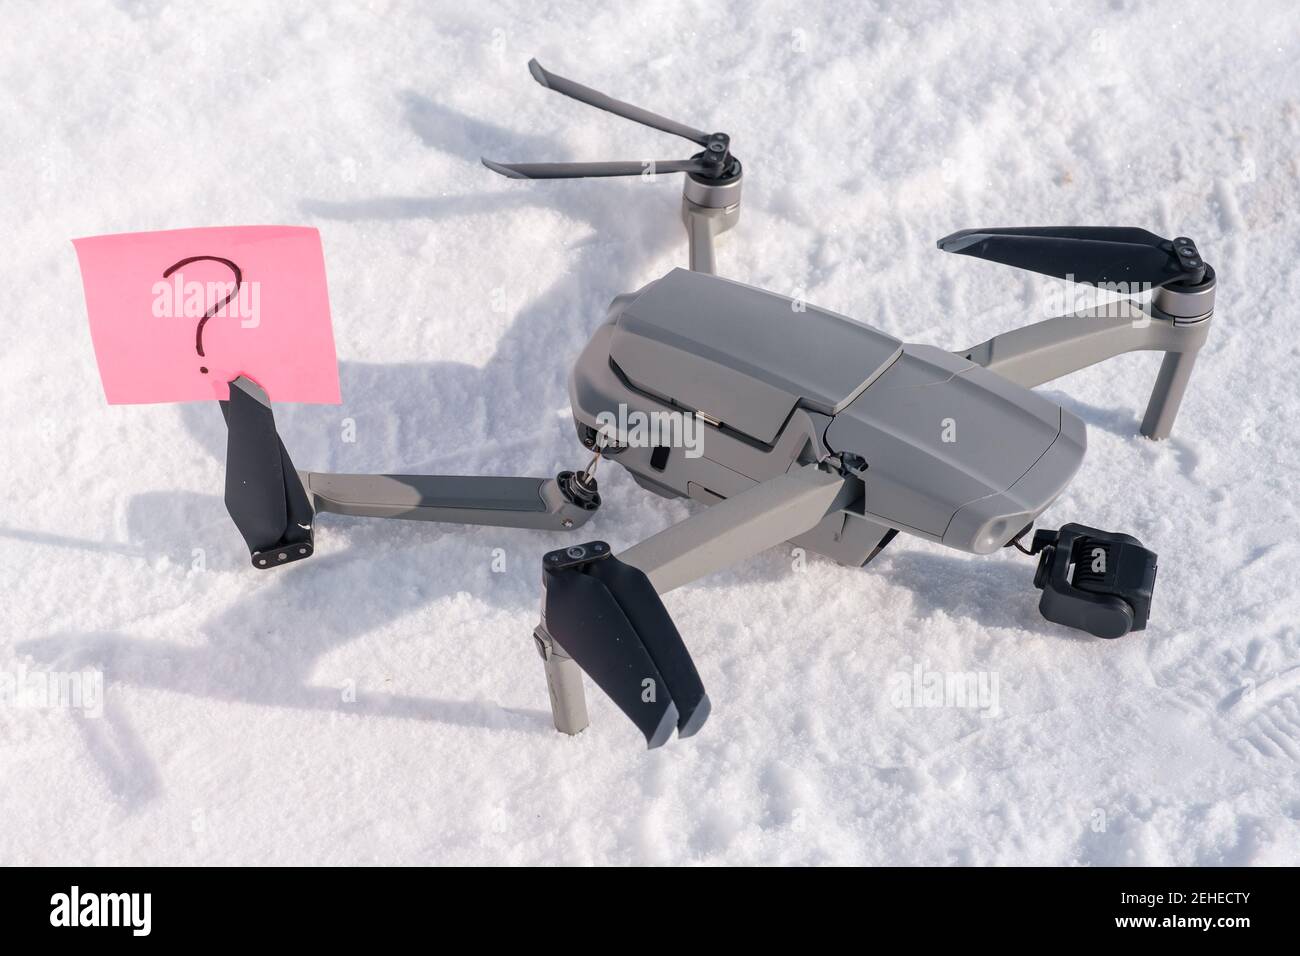 Nota appiccicosa con punto interrogativo sulle pale dell'elica di rotto drone sulla neve Foto Stock